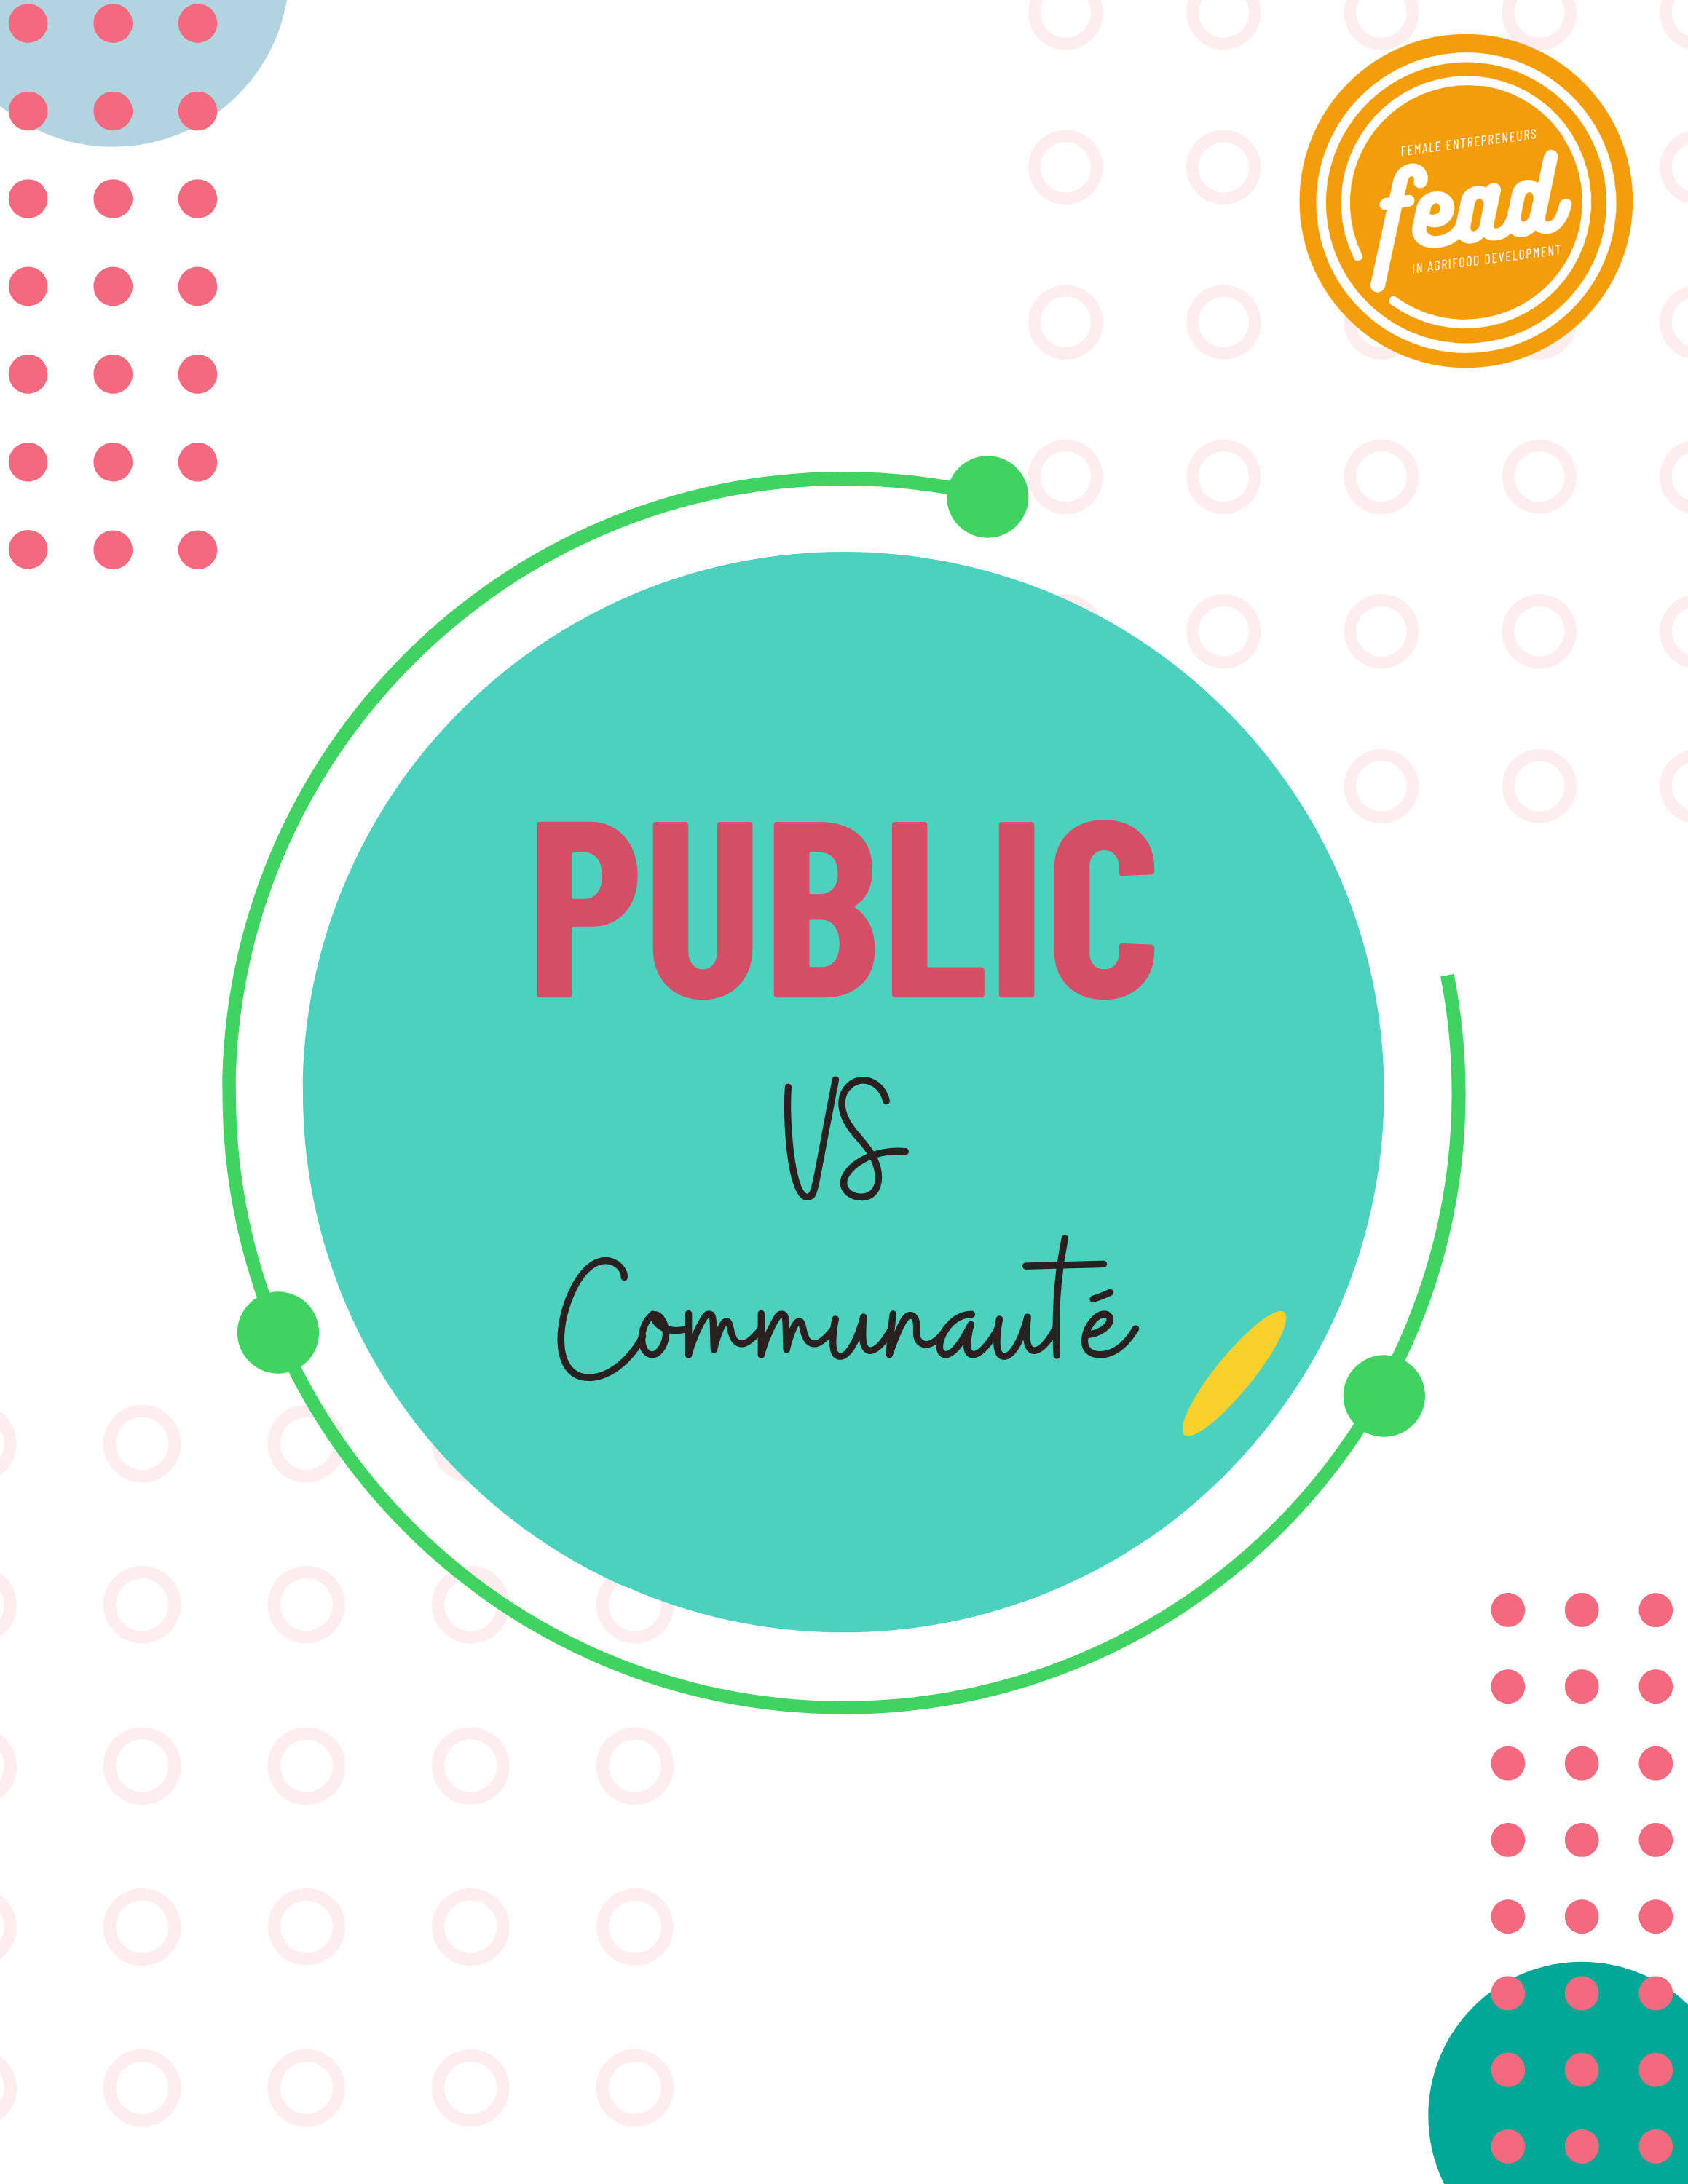 Public vs Communauté